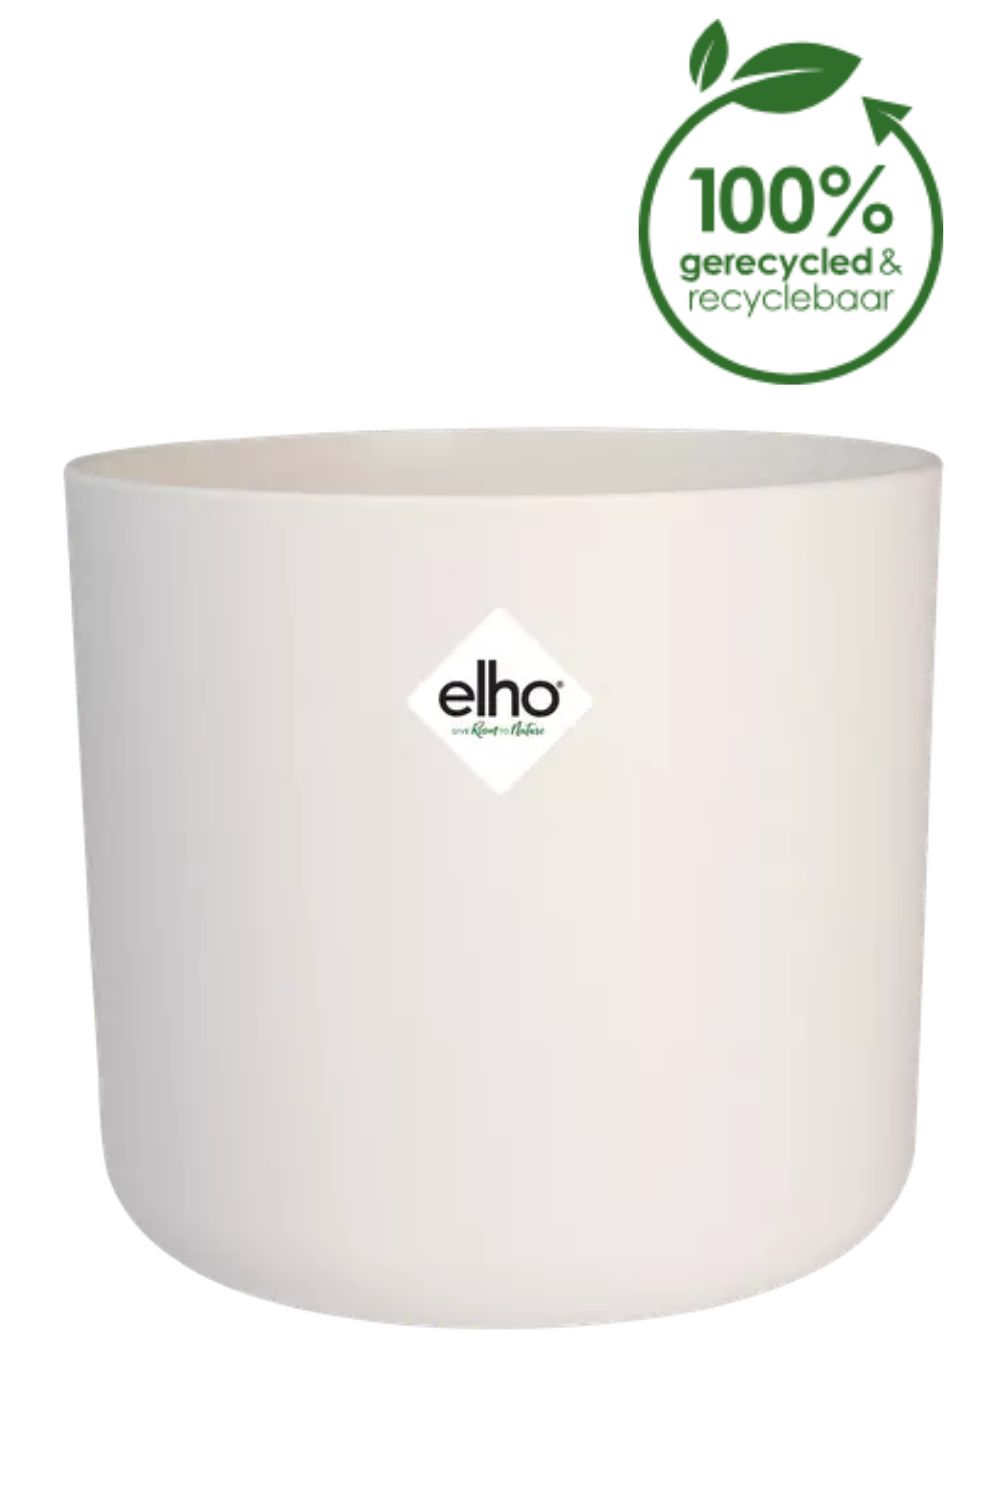 Blumentopf Elho B. for soft rund Silky White 18cm